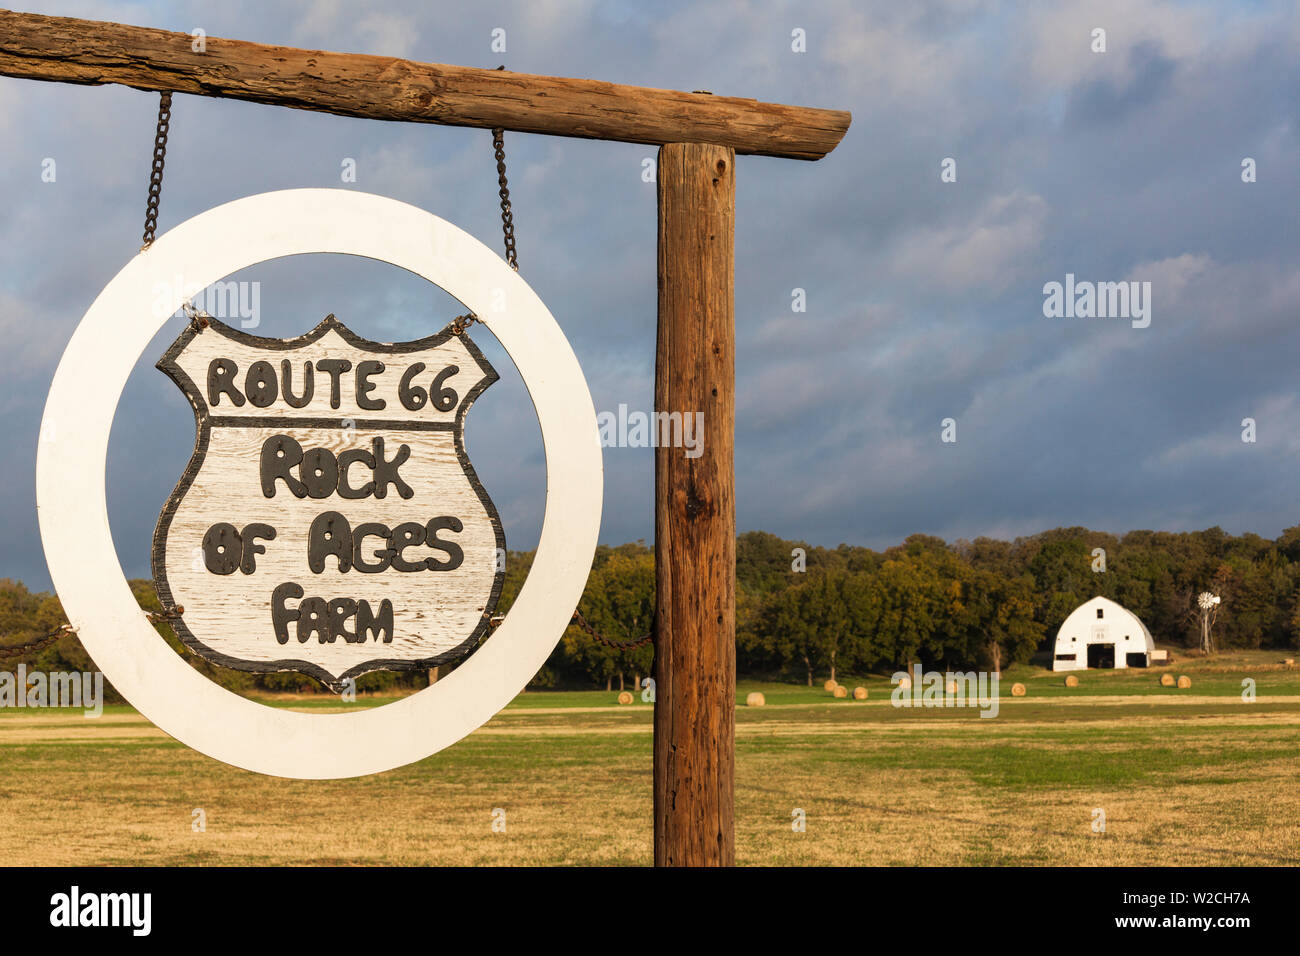 USA, Oklahoma, Arcada, Pops, Route 66 Rock of Ages Farm, Zeichen Stockfoto